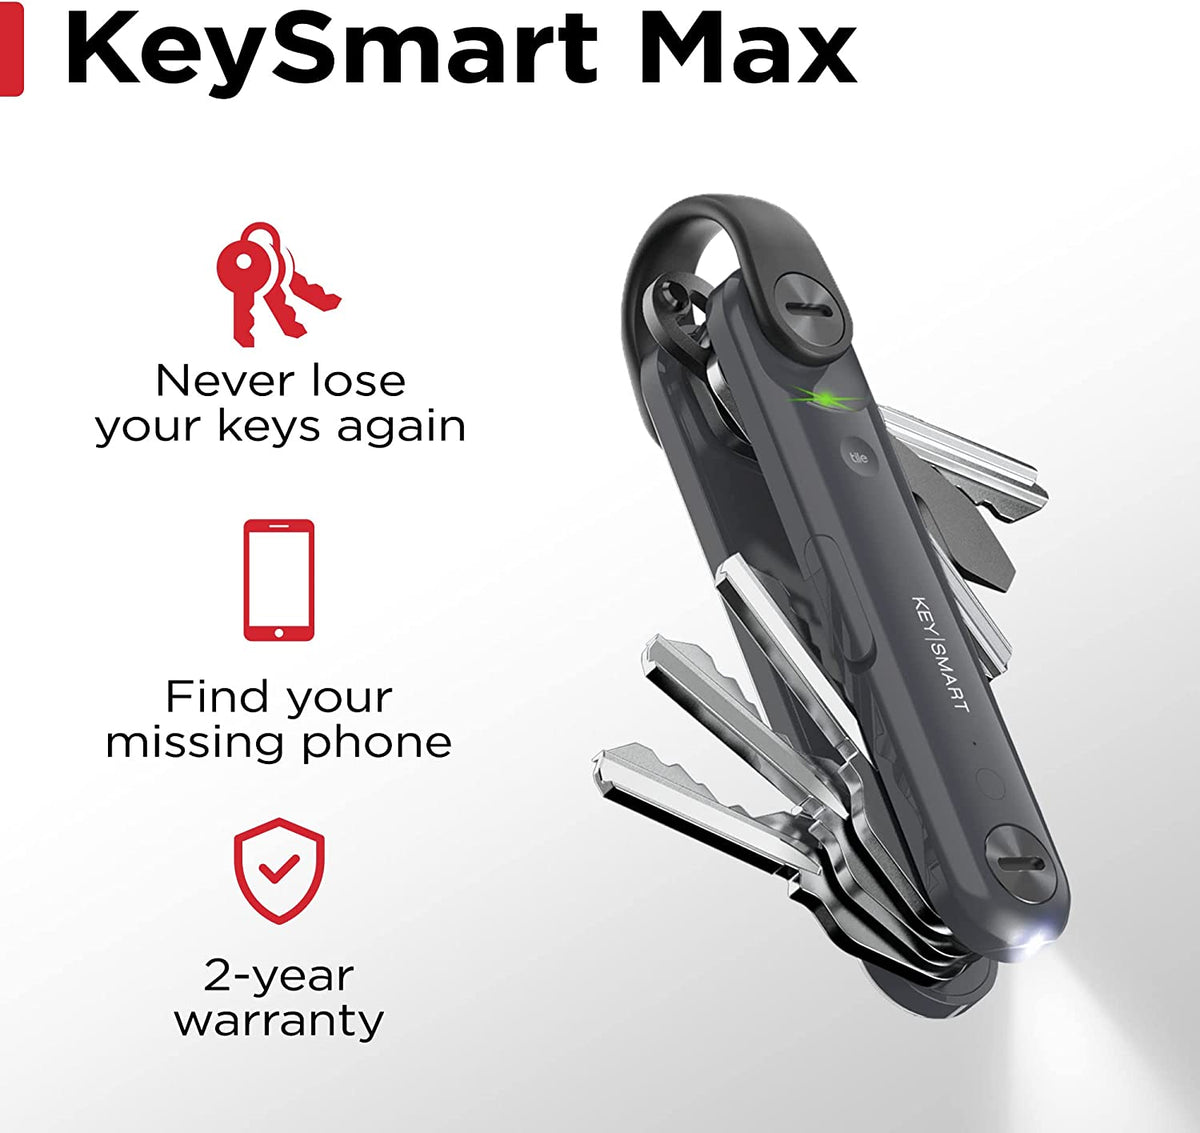 KeySmart Air Compact Key Organizer